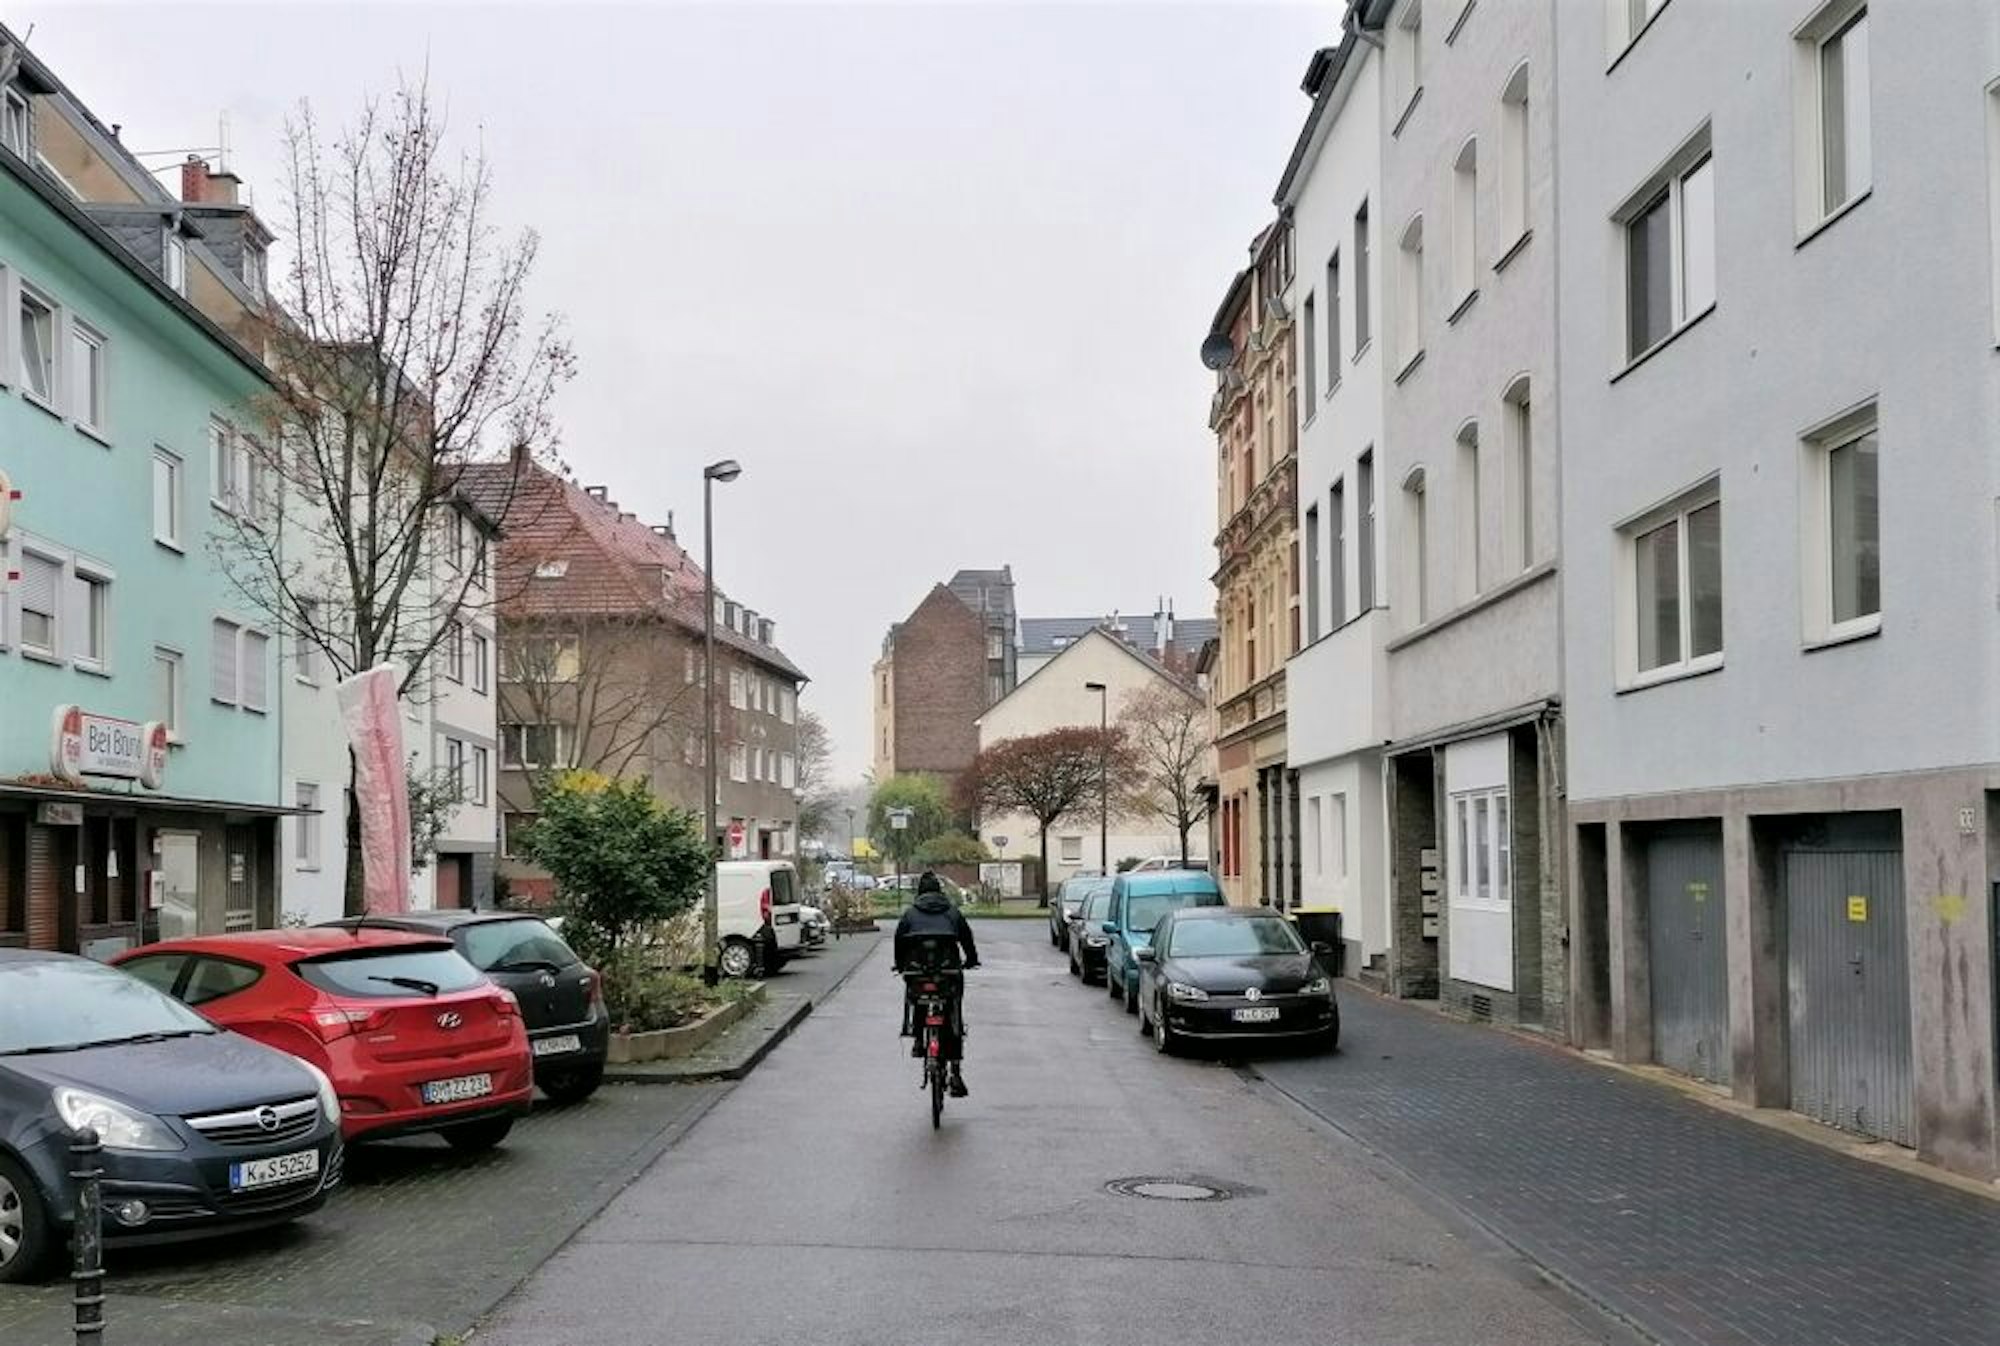 Heute ist die Bachstraße eine eher ruhige Wohngegend.